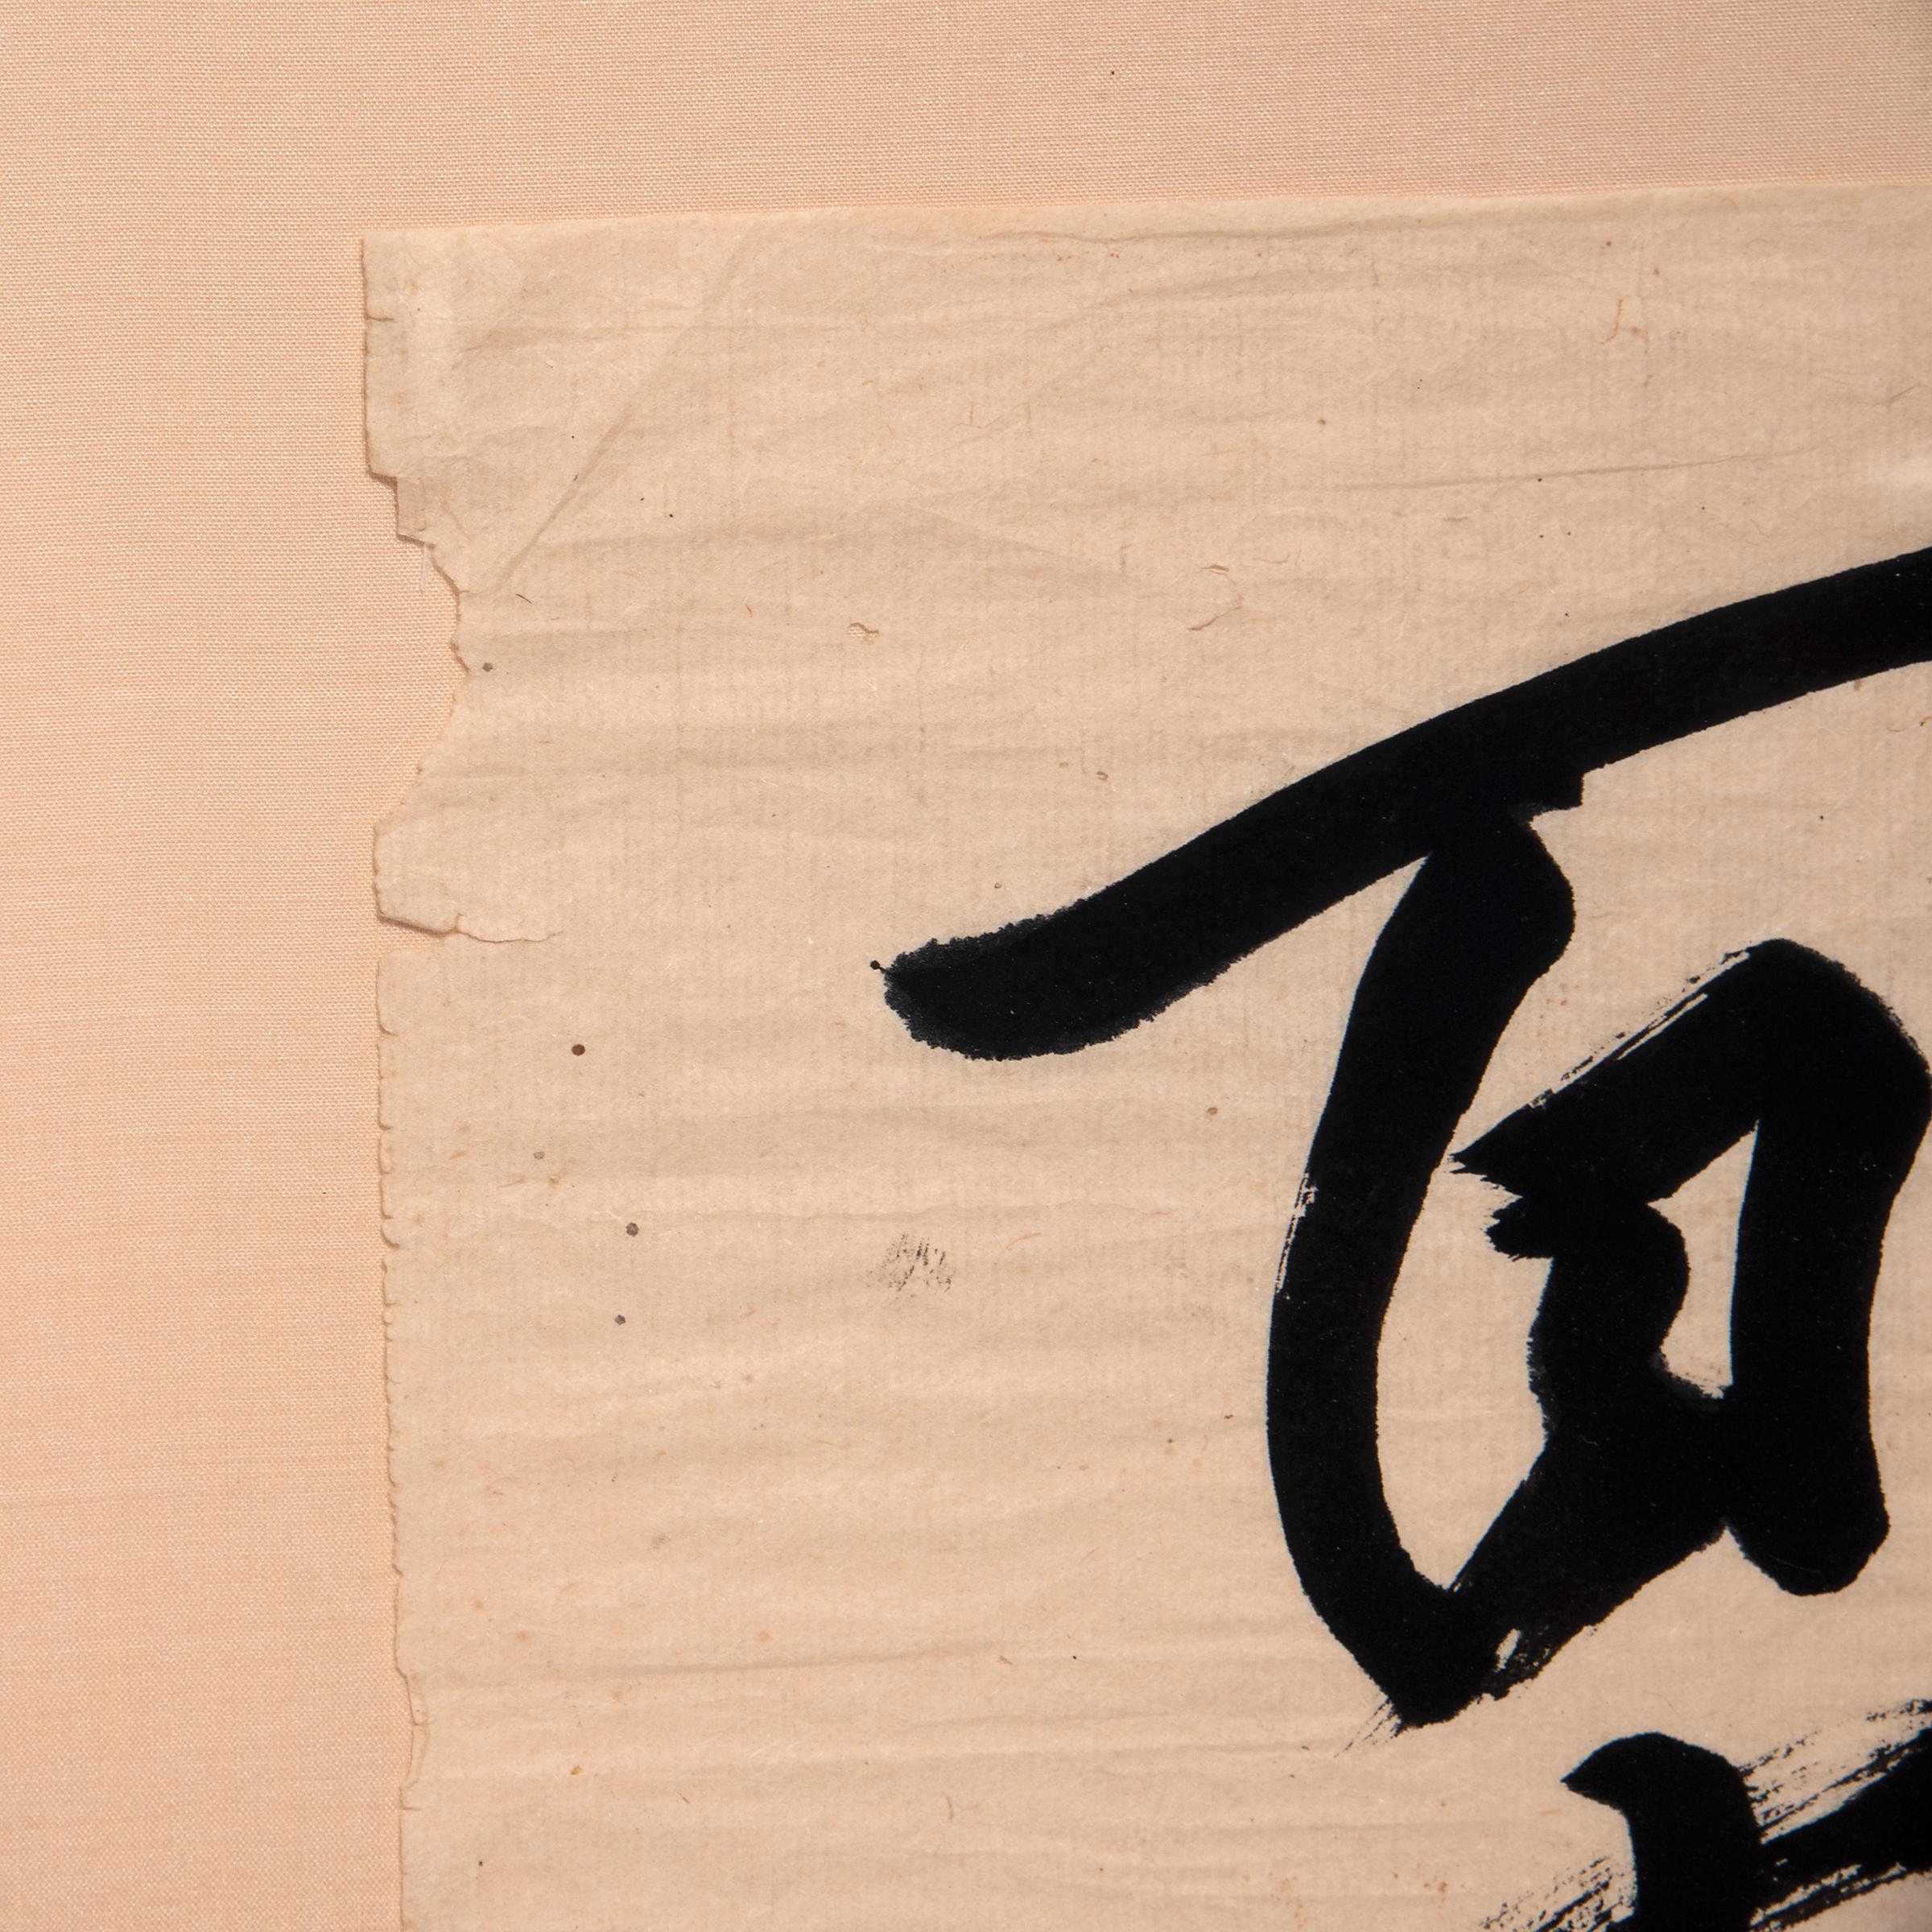 Sur un support en brocart de soie, ce rouleau de papier du début du XXe siècle est orné d'une calligraphie picturale. Exprimant des notions d'endurance et de force morale, le rouleau a peut-être été peint en l'honneur d'un ami ou d'une personne